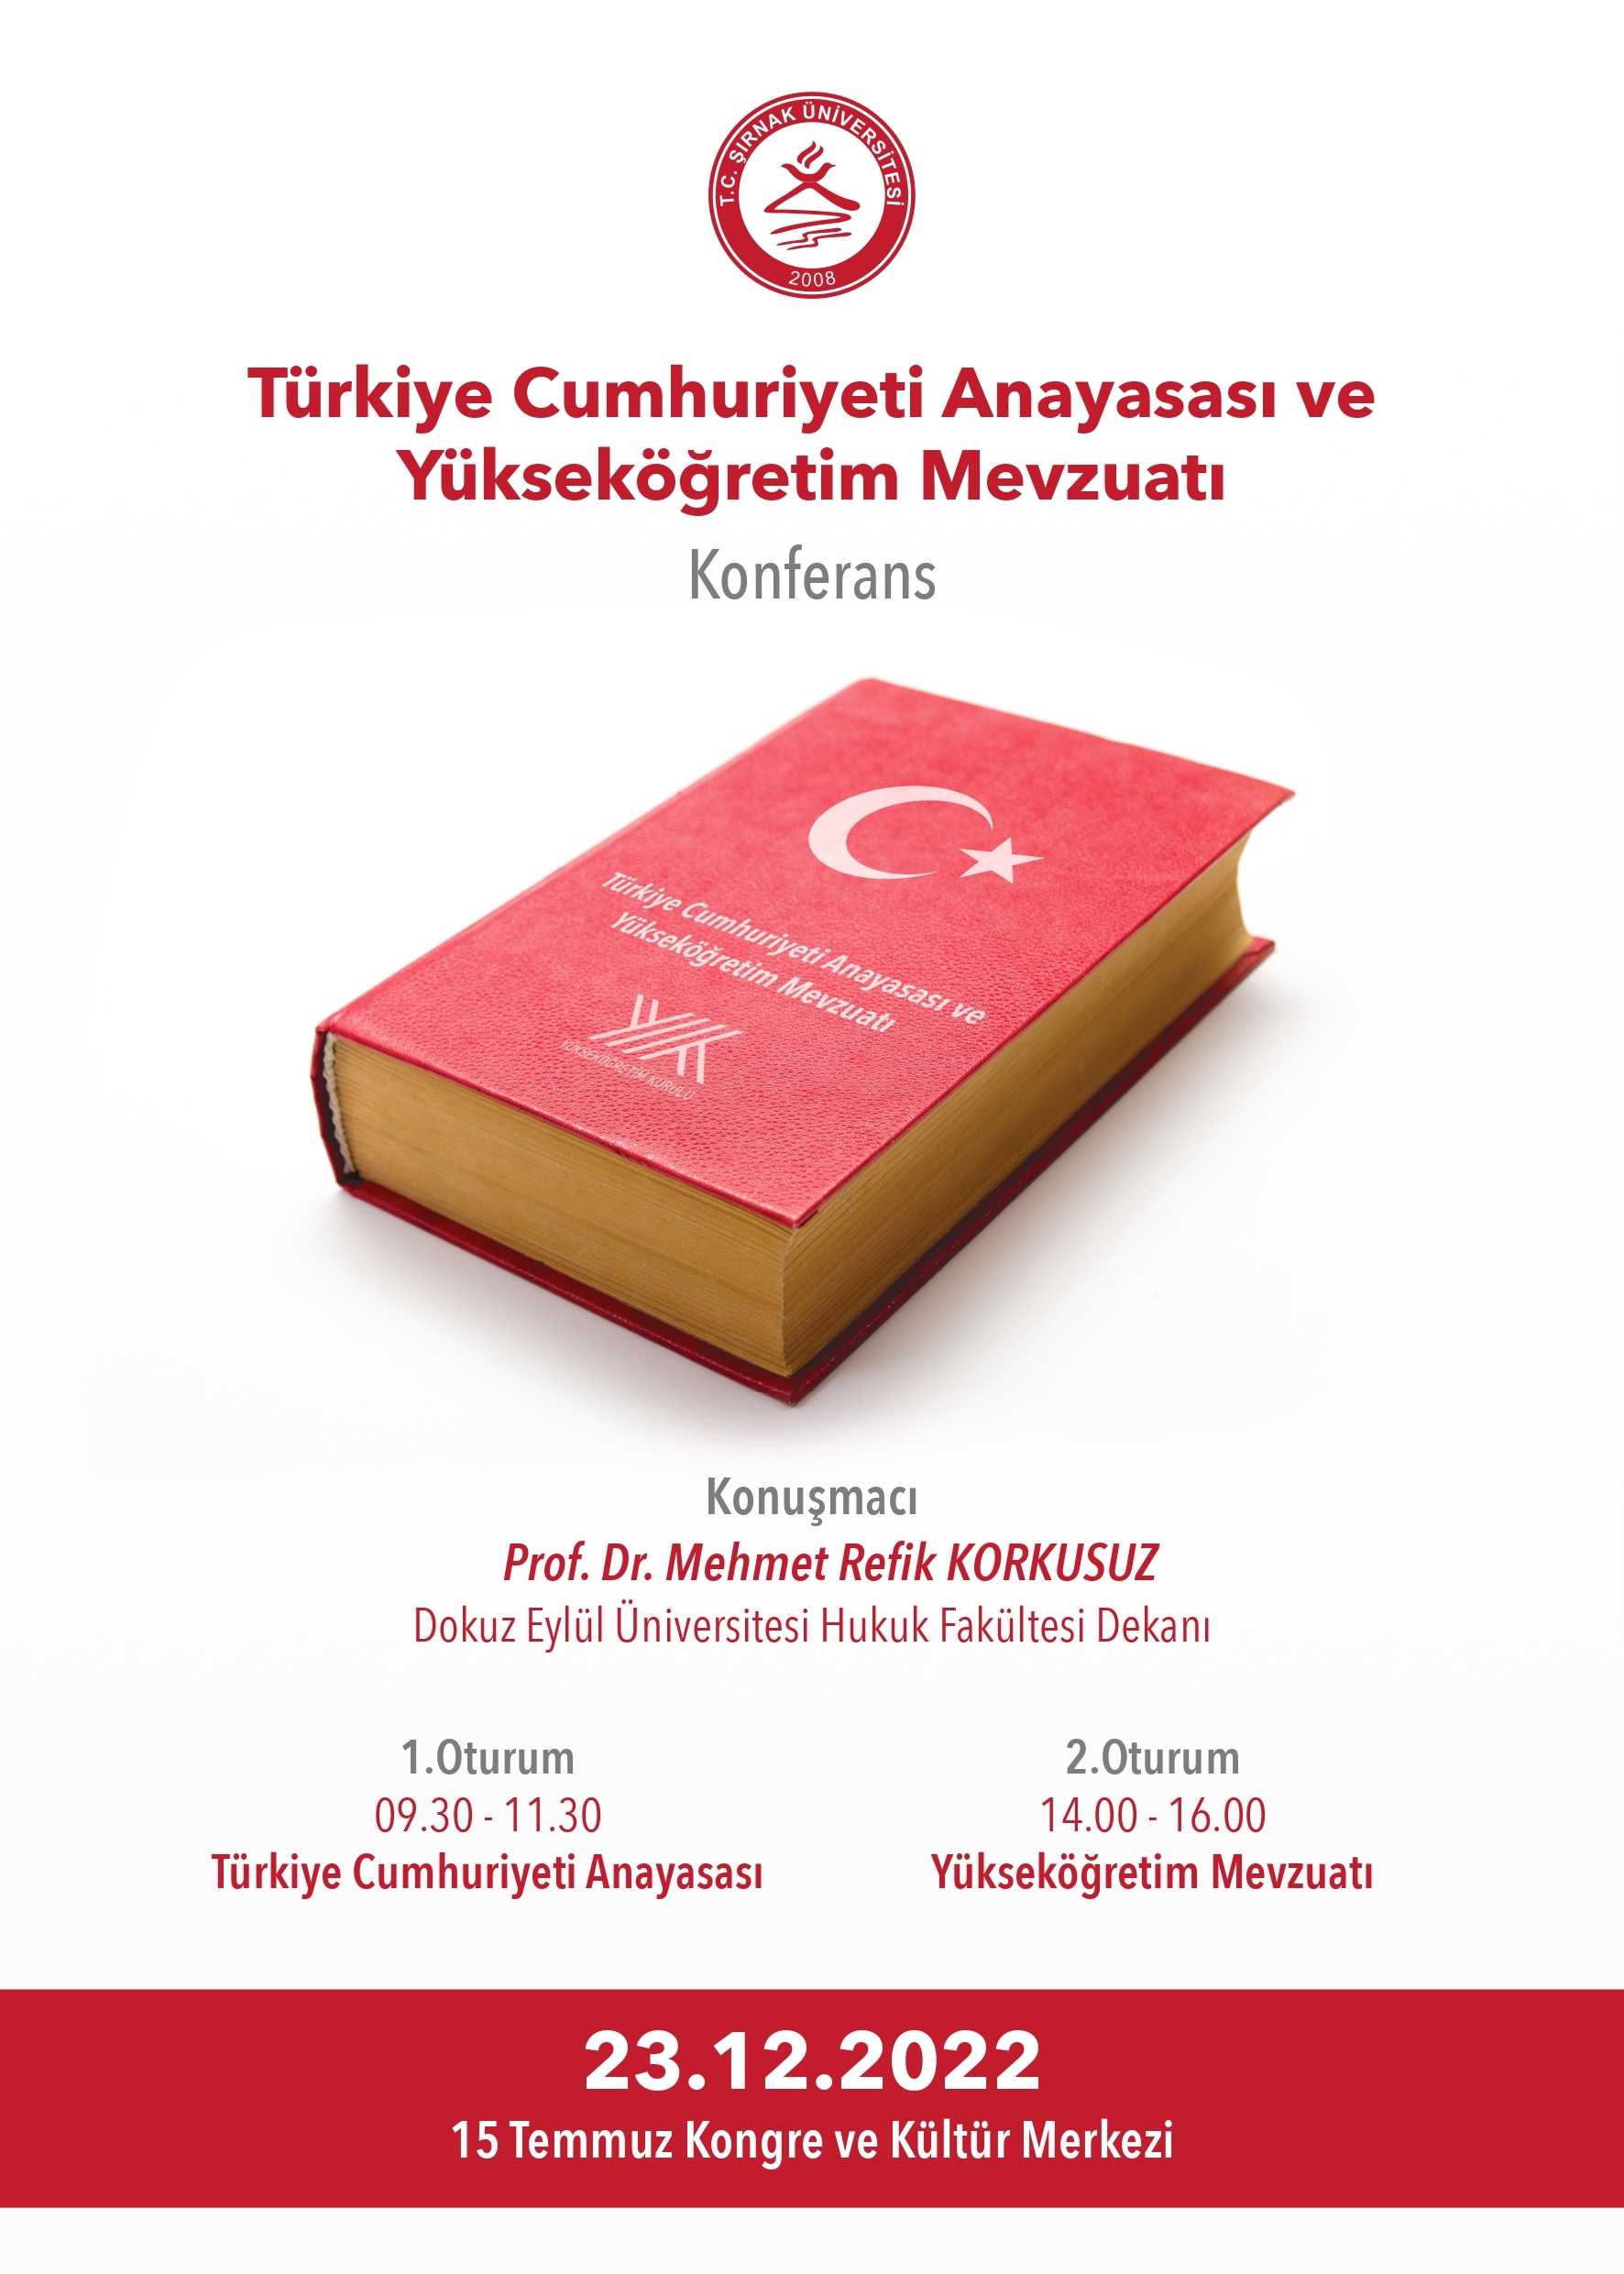 turkiye-cumhuriyeti-anayasasi-ve-yuksekogretim-mevzuati-konferansi